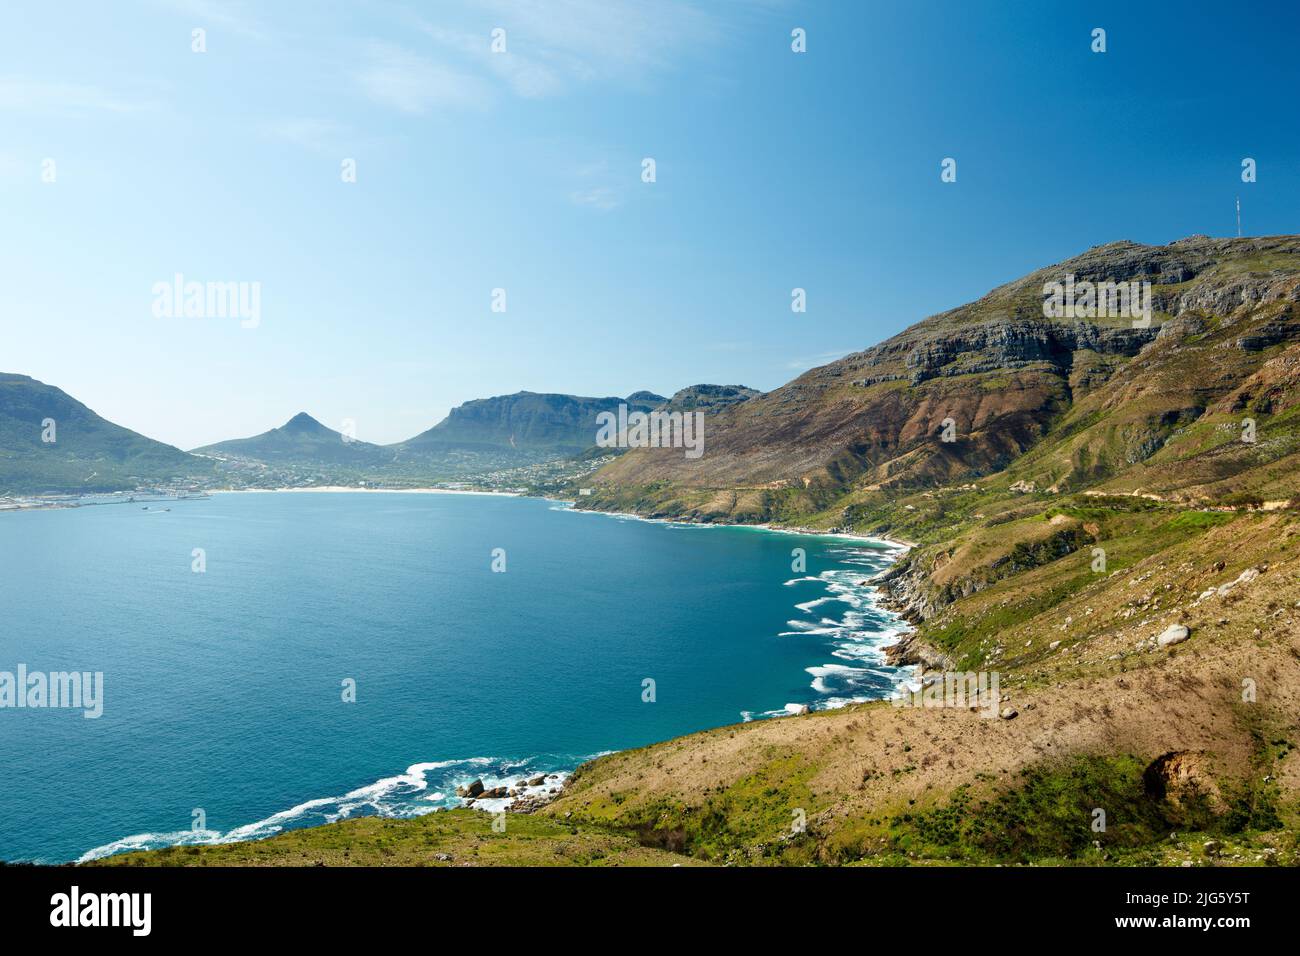 Landschaft mit felsiger Küste in der Nähe von Bergen in Südafrika für eine friedliche Naturszene. Großer blauer See oder ruhiges Meer, umgeben von lebhaften grünen Hügeln Stockfoto